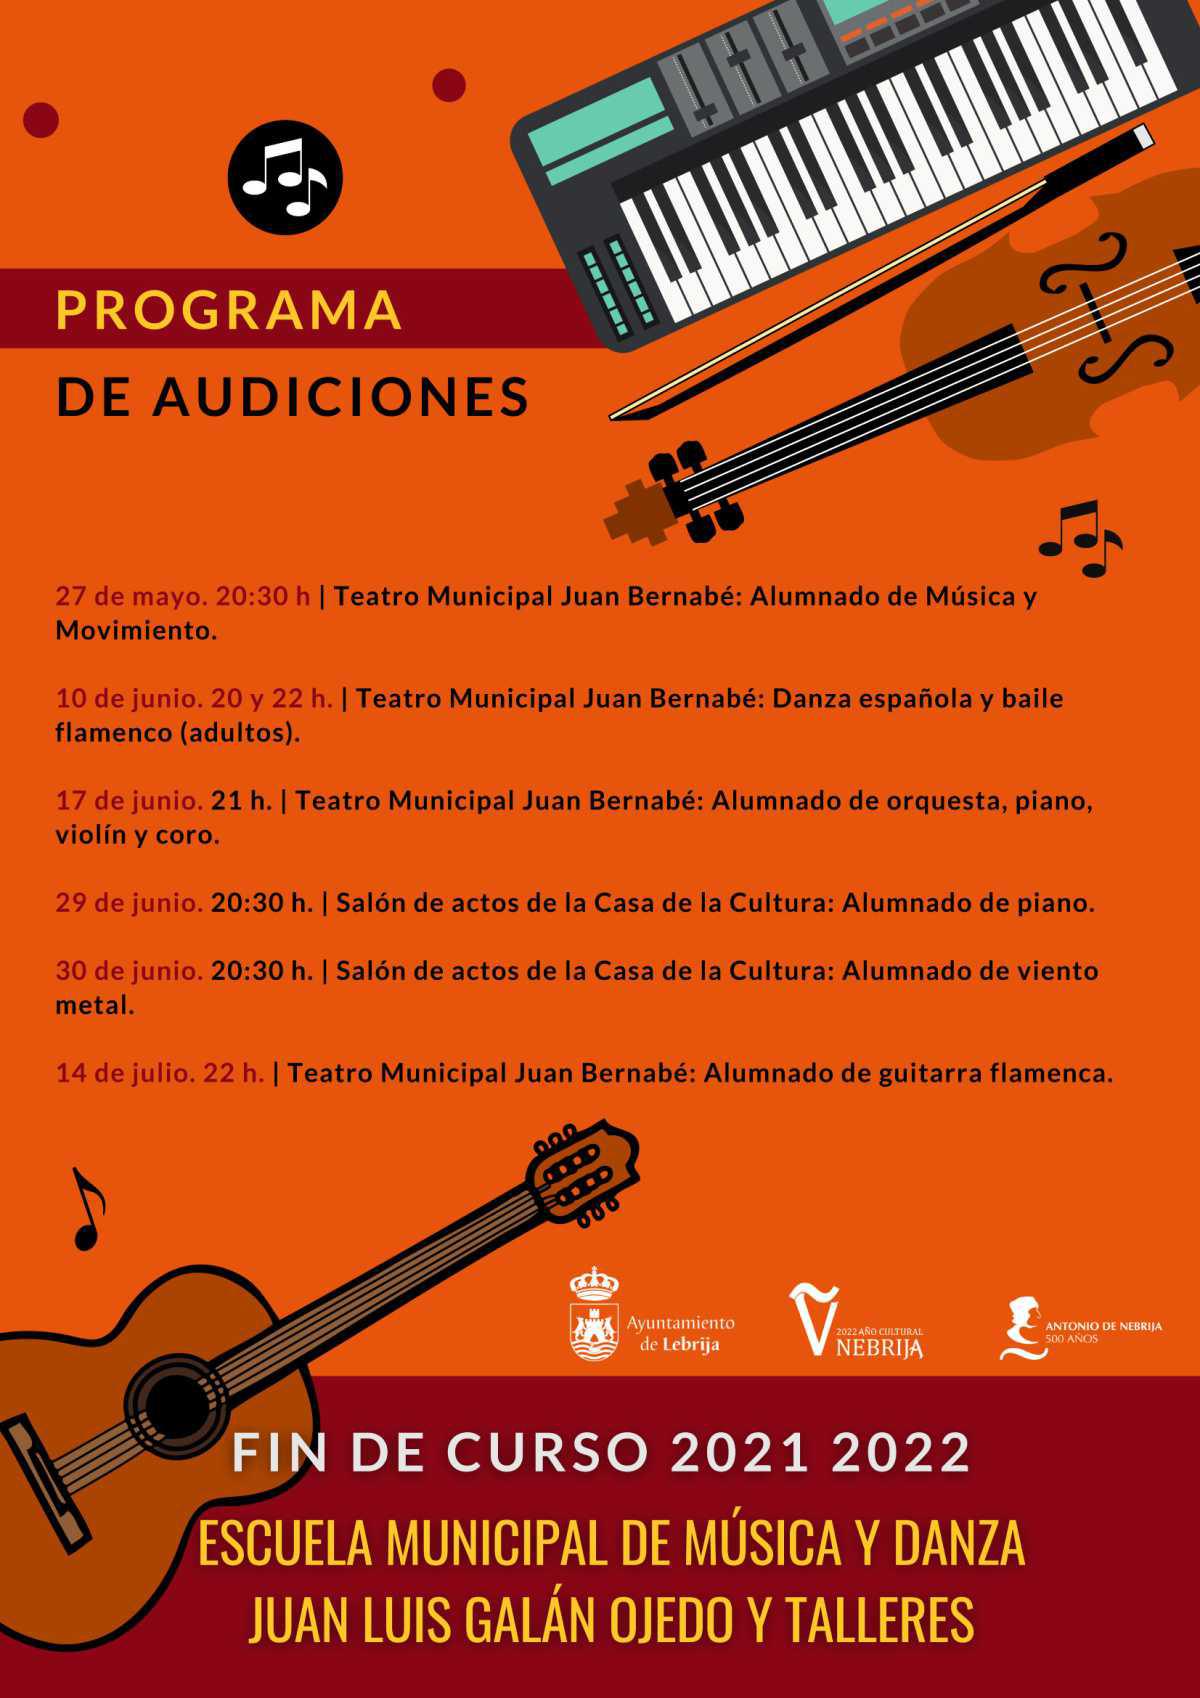 Las audiciones de la Escuela Municipal de Música comenzarán a celebrarse a partir del 27 de mayo